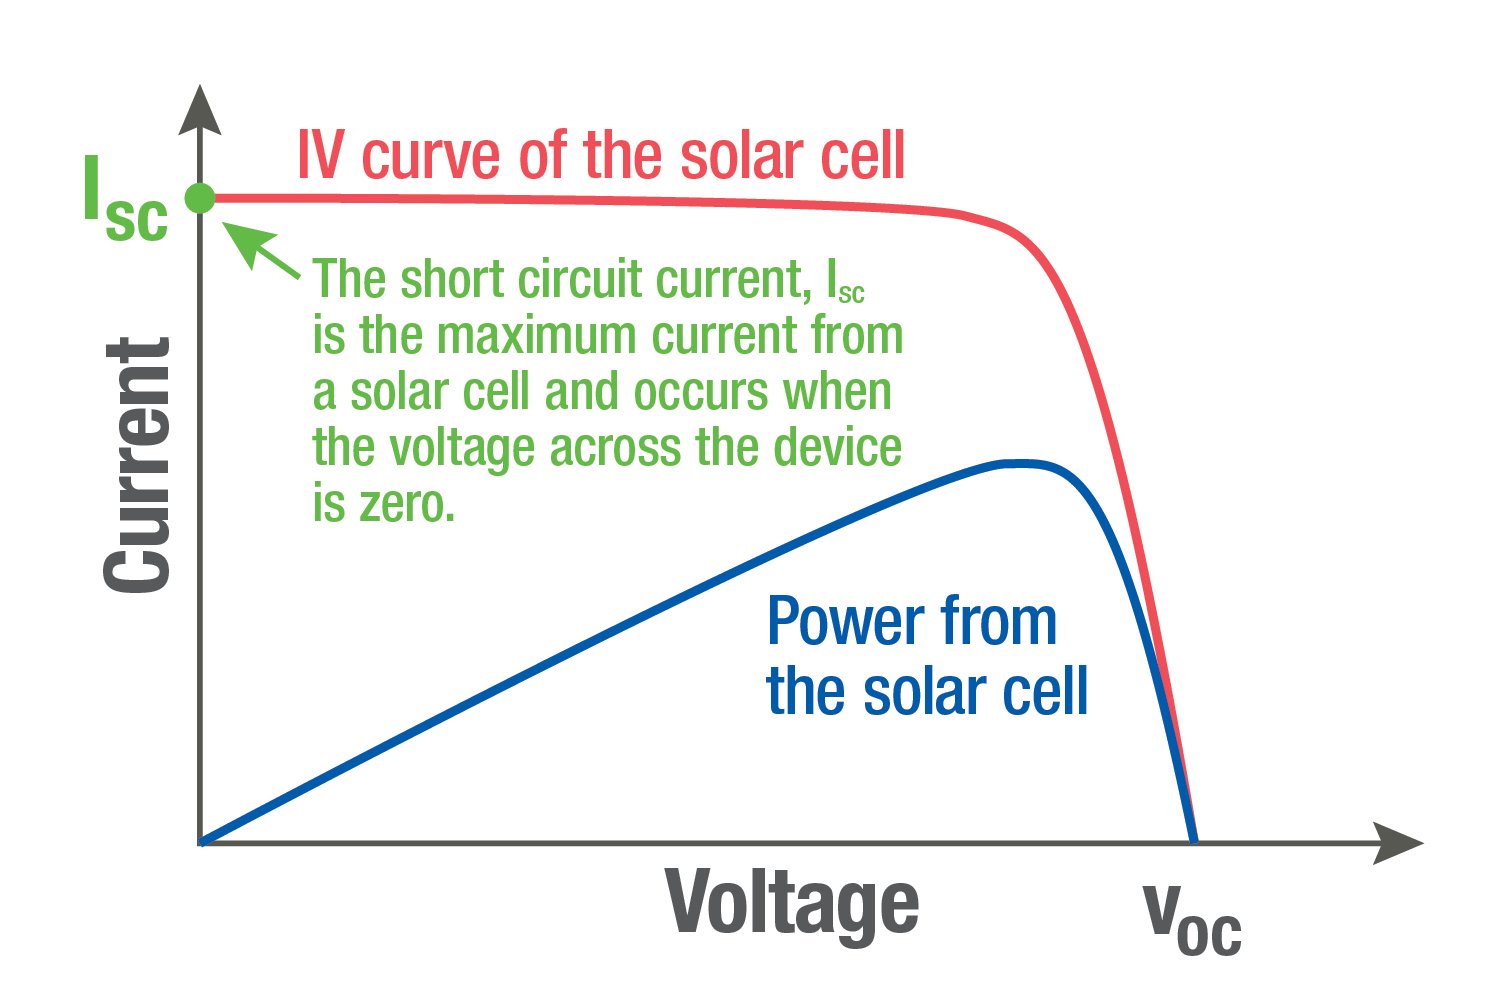 Curva de corriente-tensión (I-V) de un módulo fotovoltaico